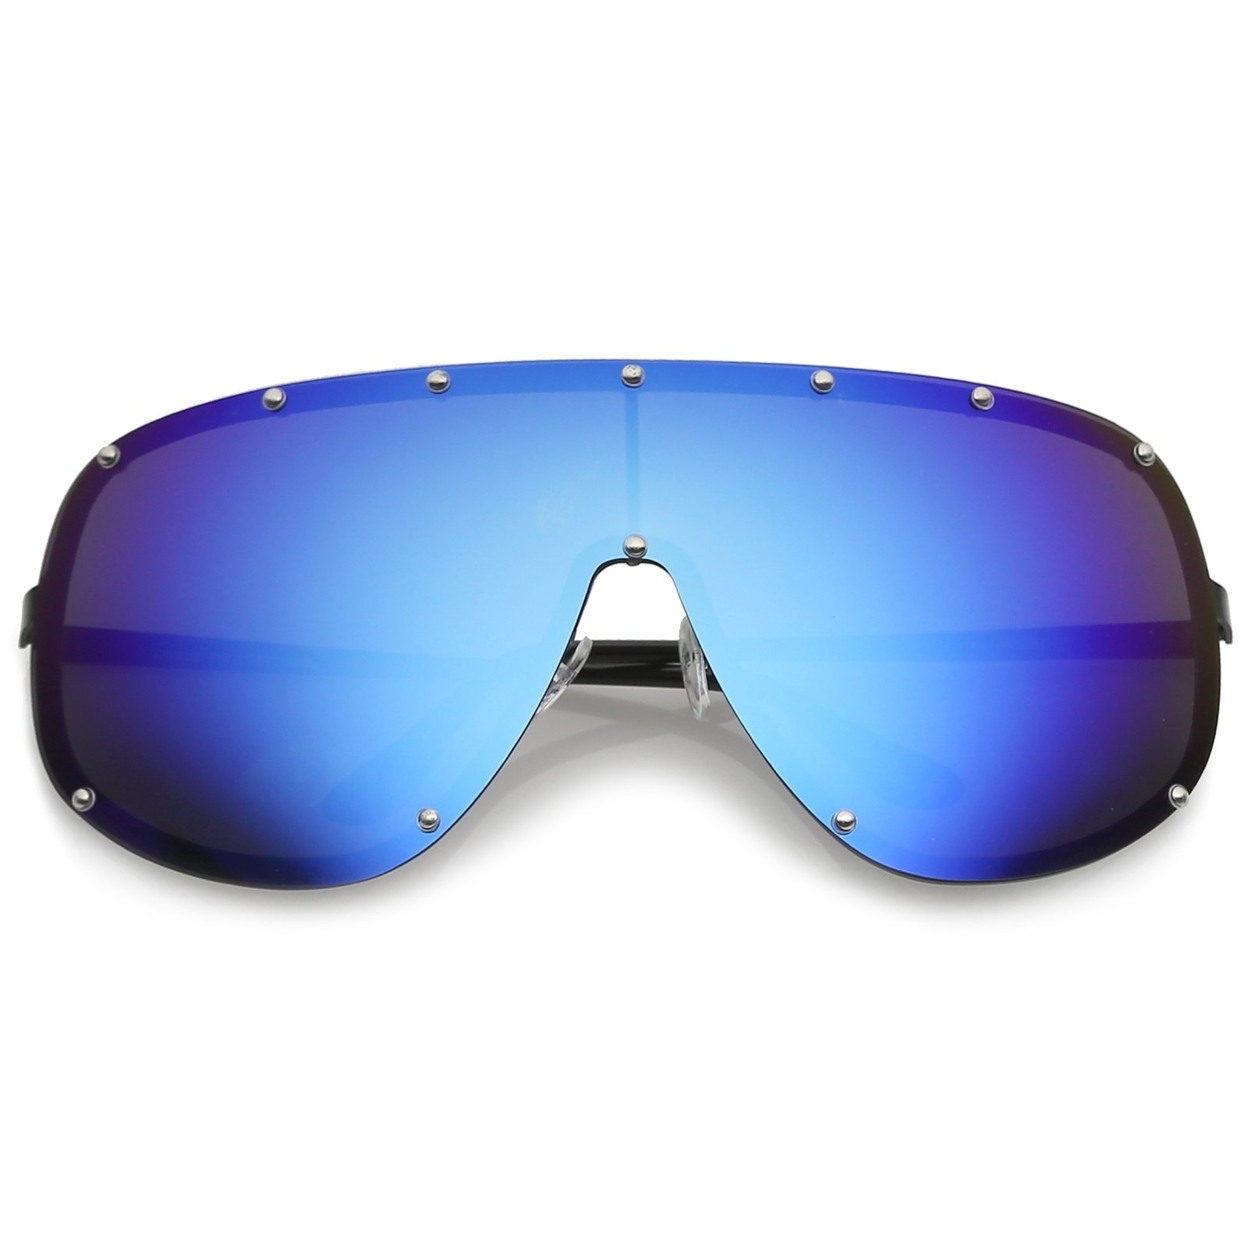 Futuristic Oversize Rimless Colored Mirrored Mono Lens Shield Sunglasses 75mm - Gold / Brown Mirror